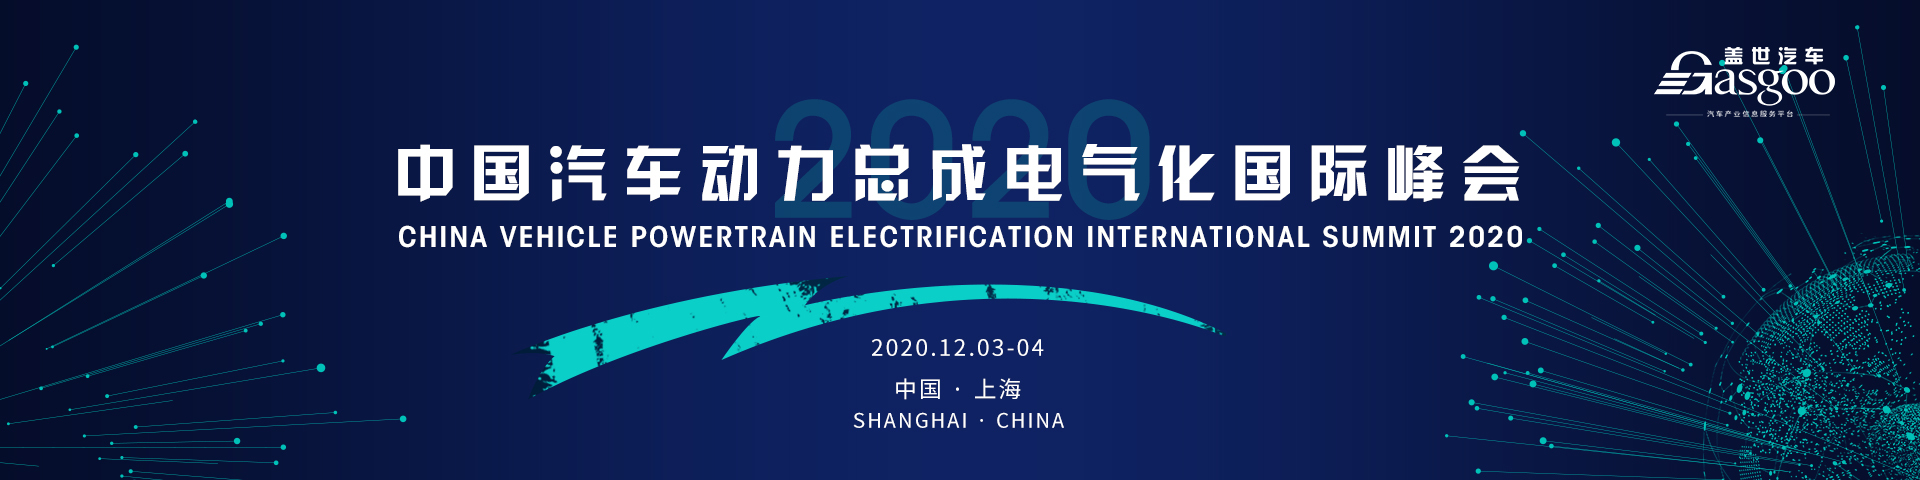 2020中国汽车动力总成电气化国际峰会